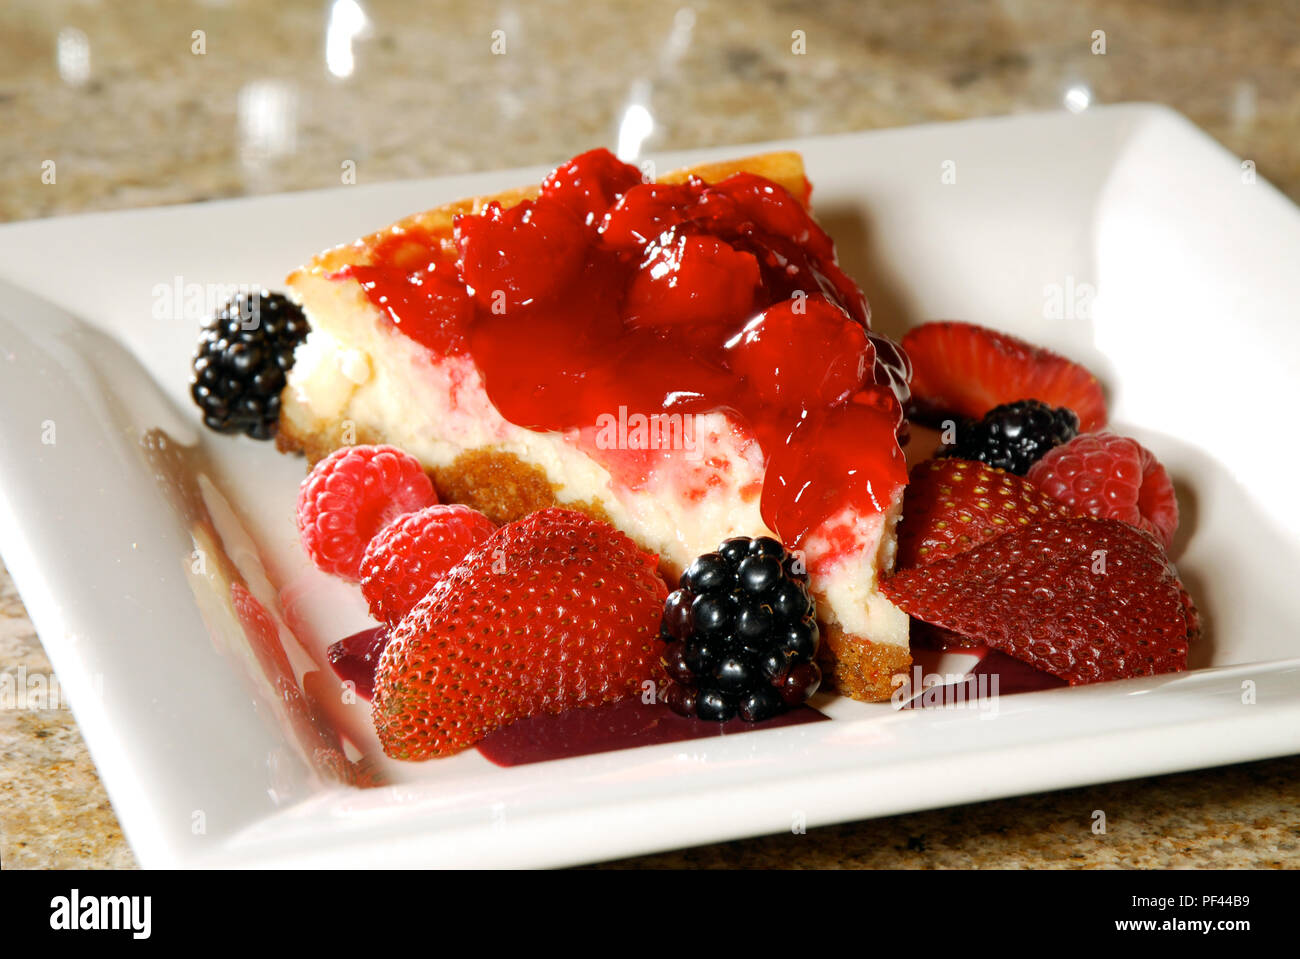 Image stock photo d'une tranche de gâteau au fromage avec des fraises et des mûres. Photos stock alimentaire. Banque D'Images